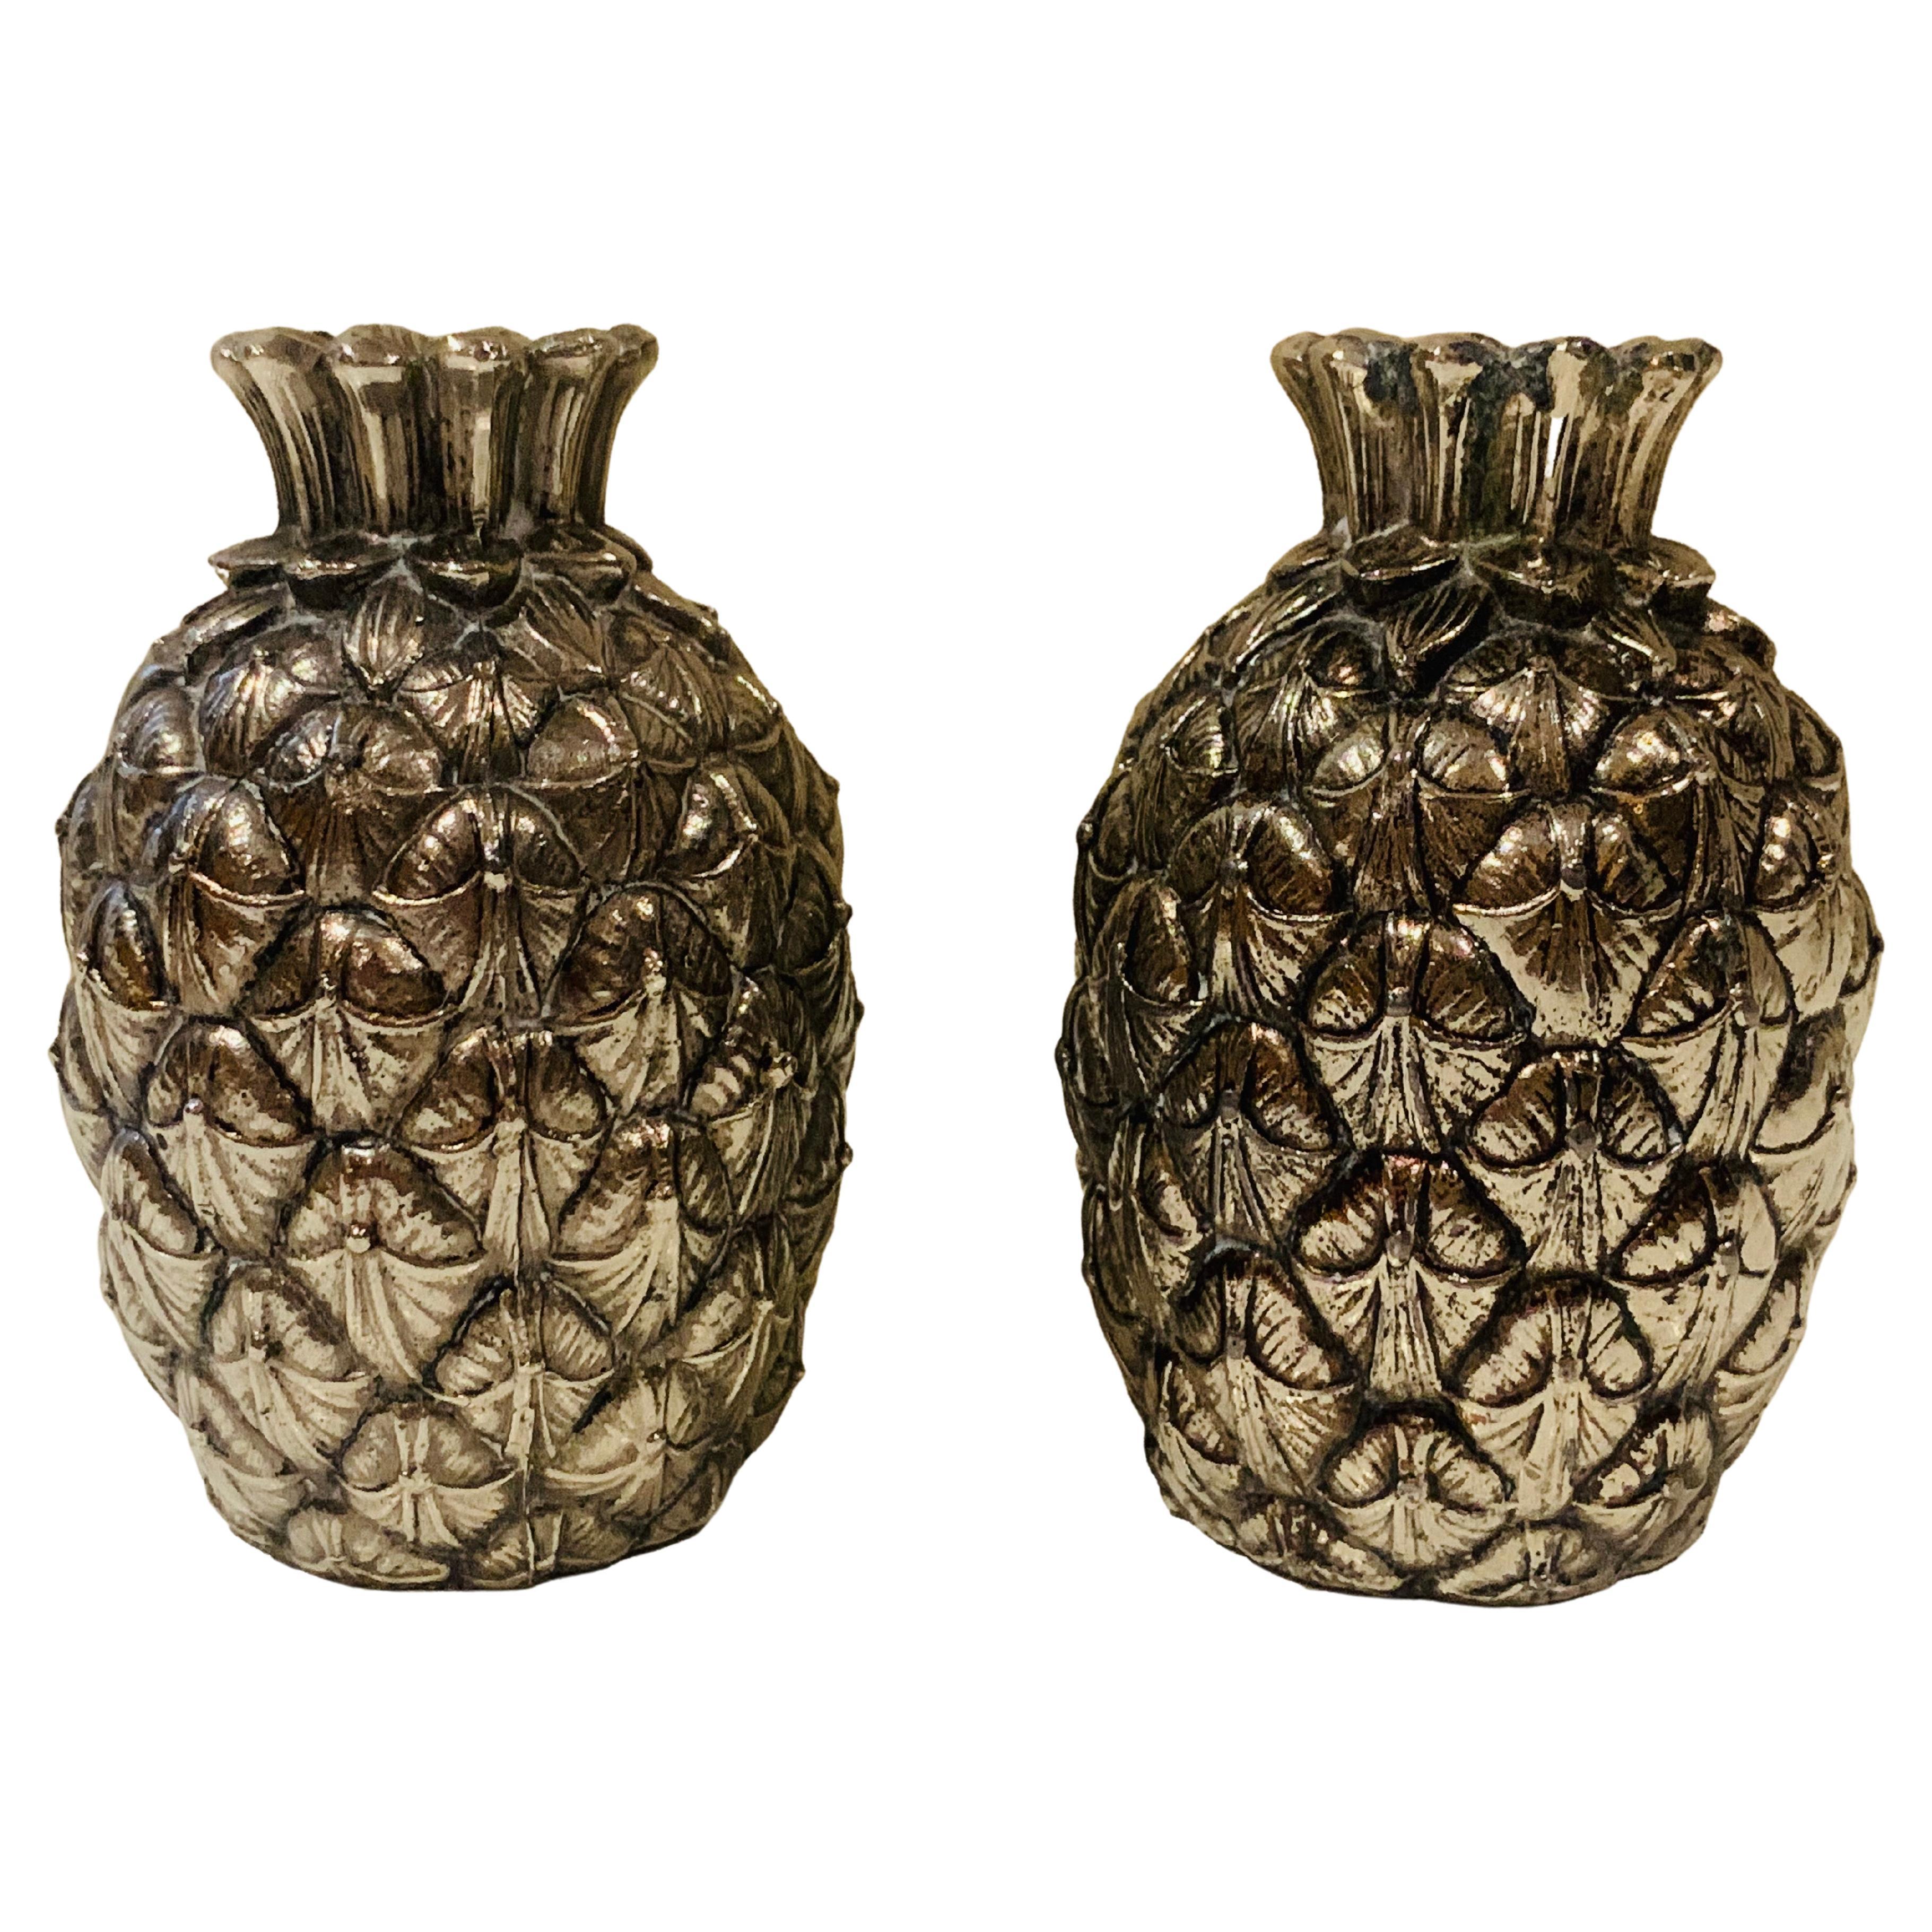 Salire et poivrire italienne Mauro Manetti Firenze en mtal argent en forme d'ananas des annes 1970